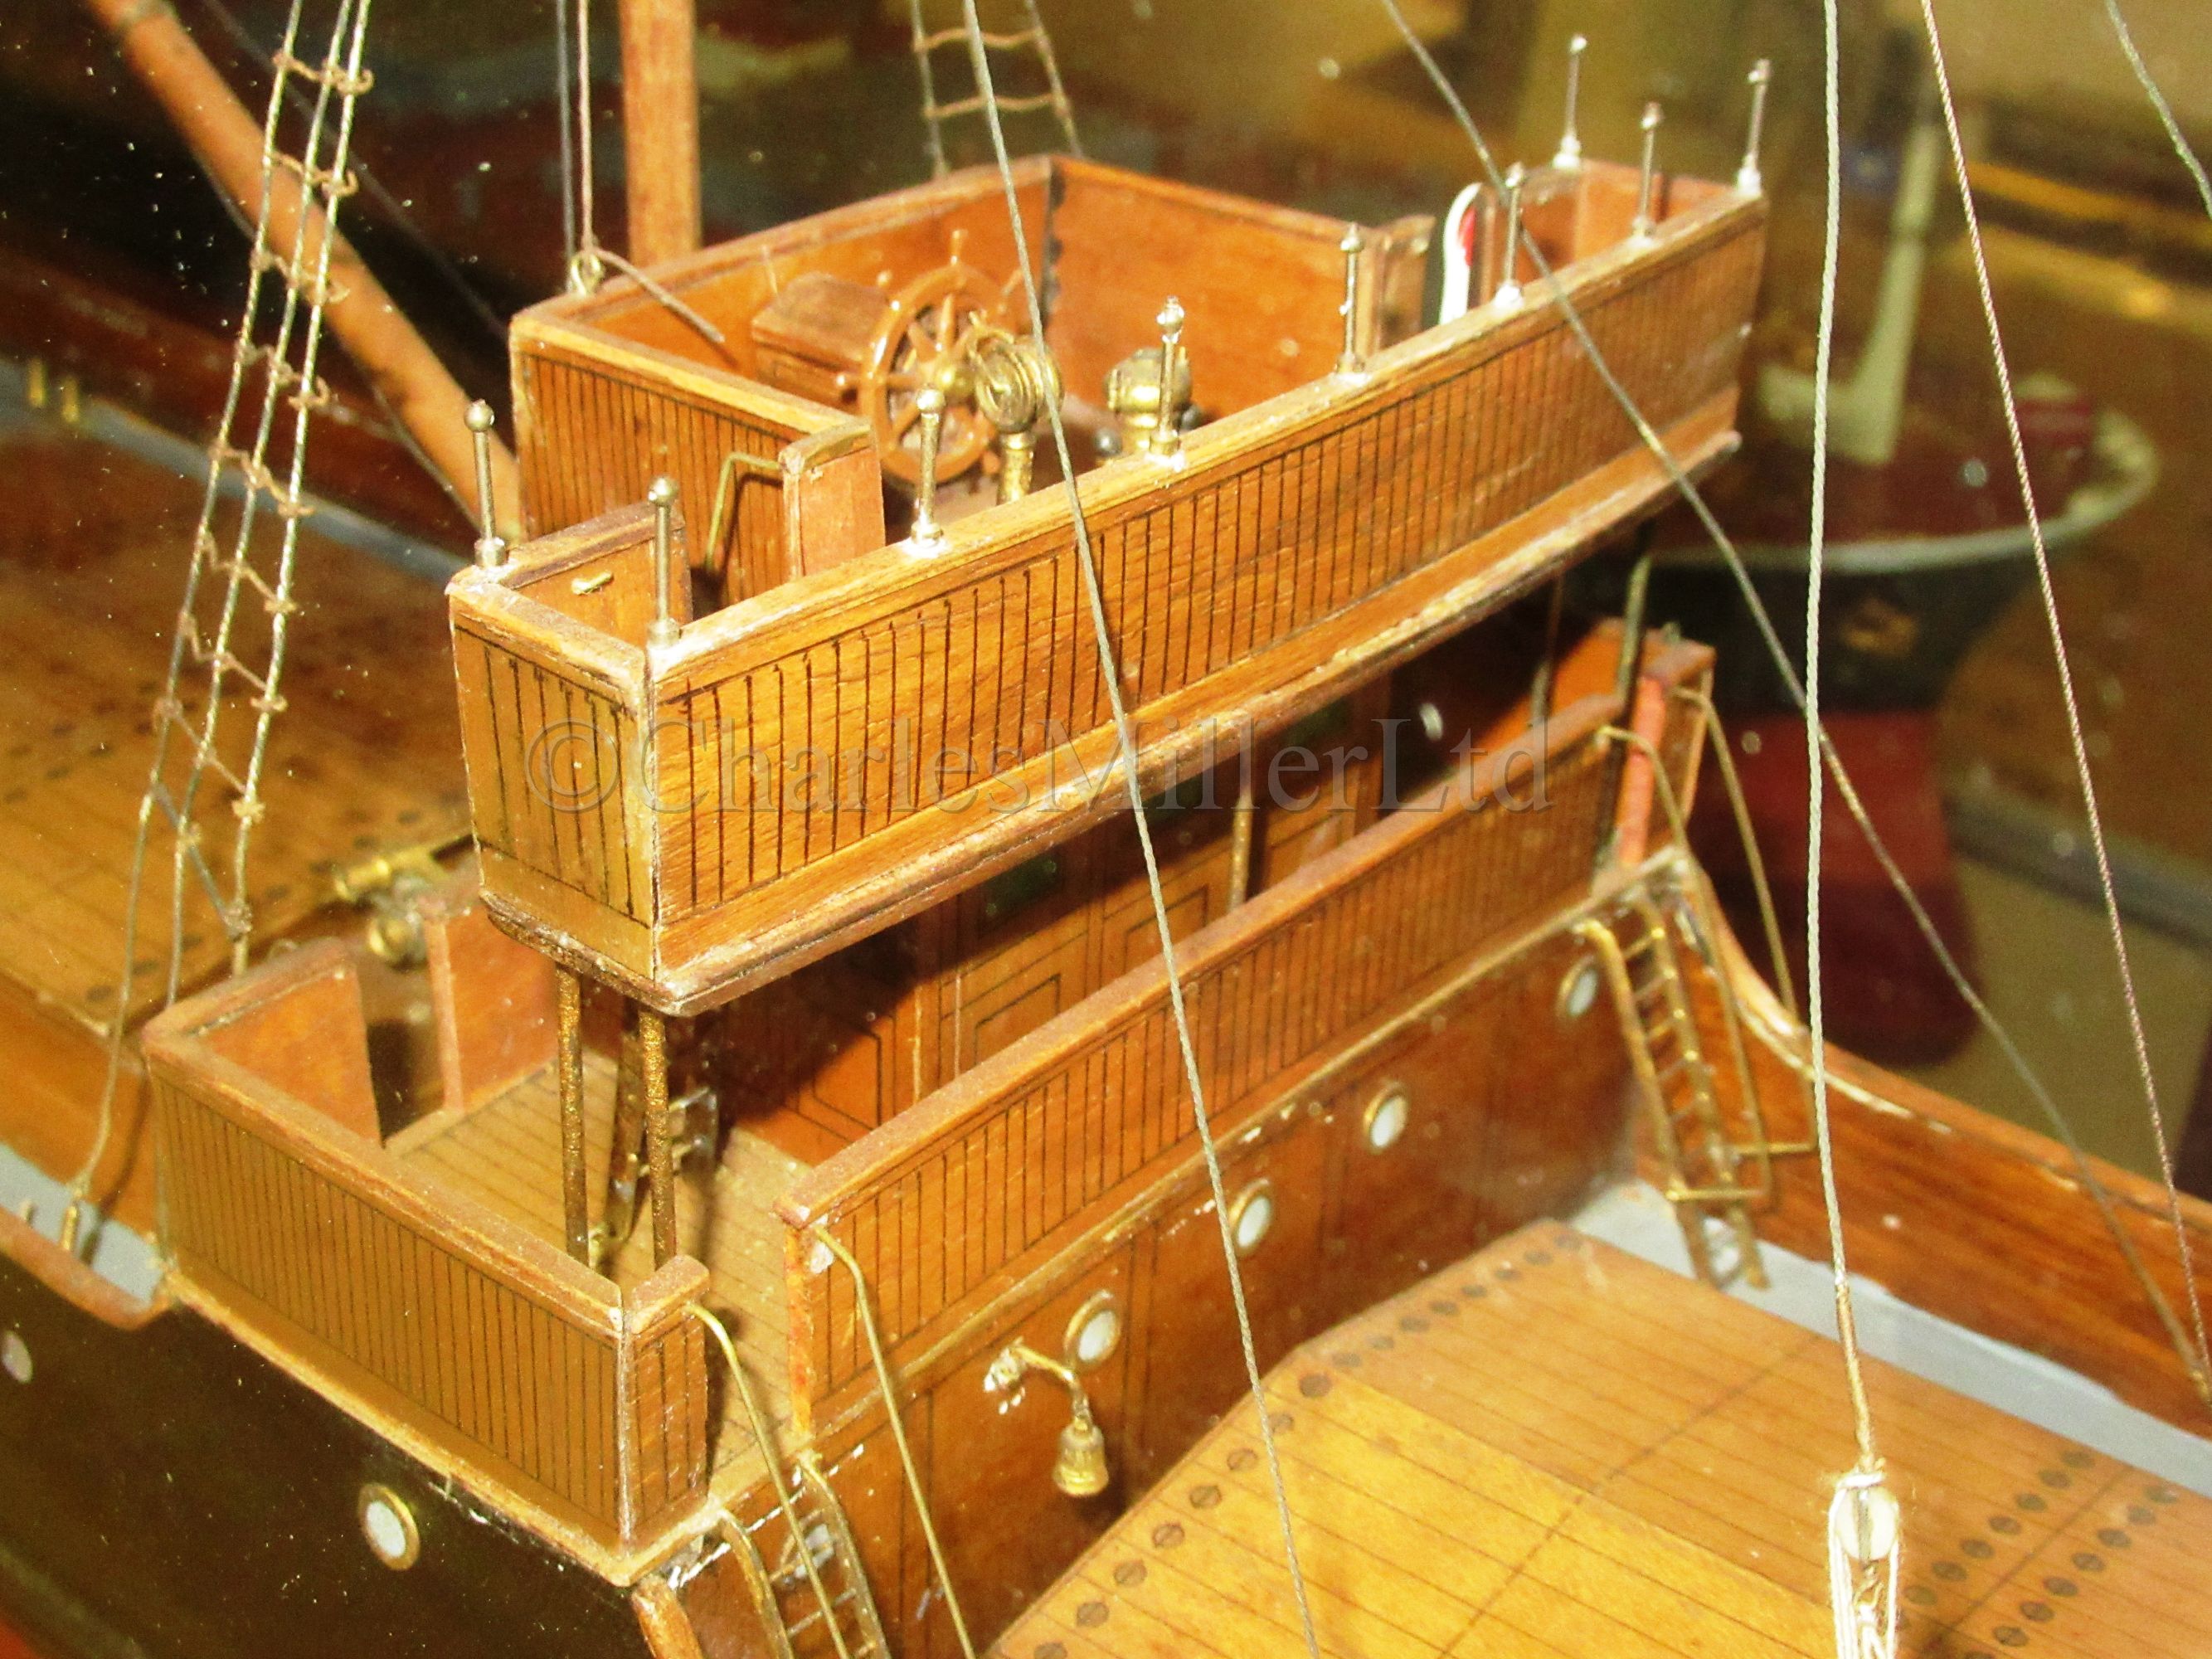 A BUILDER’S MODEL FOR THE CARGO SHIP S.S. EGHAM BUILT BY CRICHTON’S, SALTNEY FOR J. HARRISON LTD, - Image 3 of 16